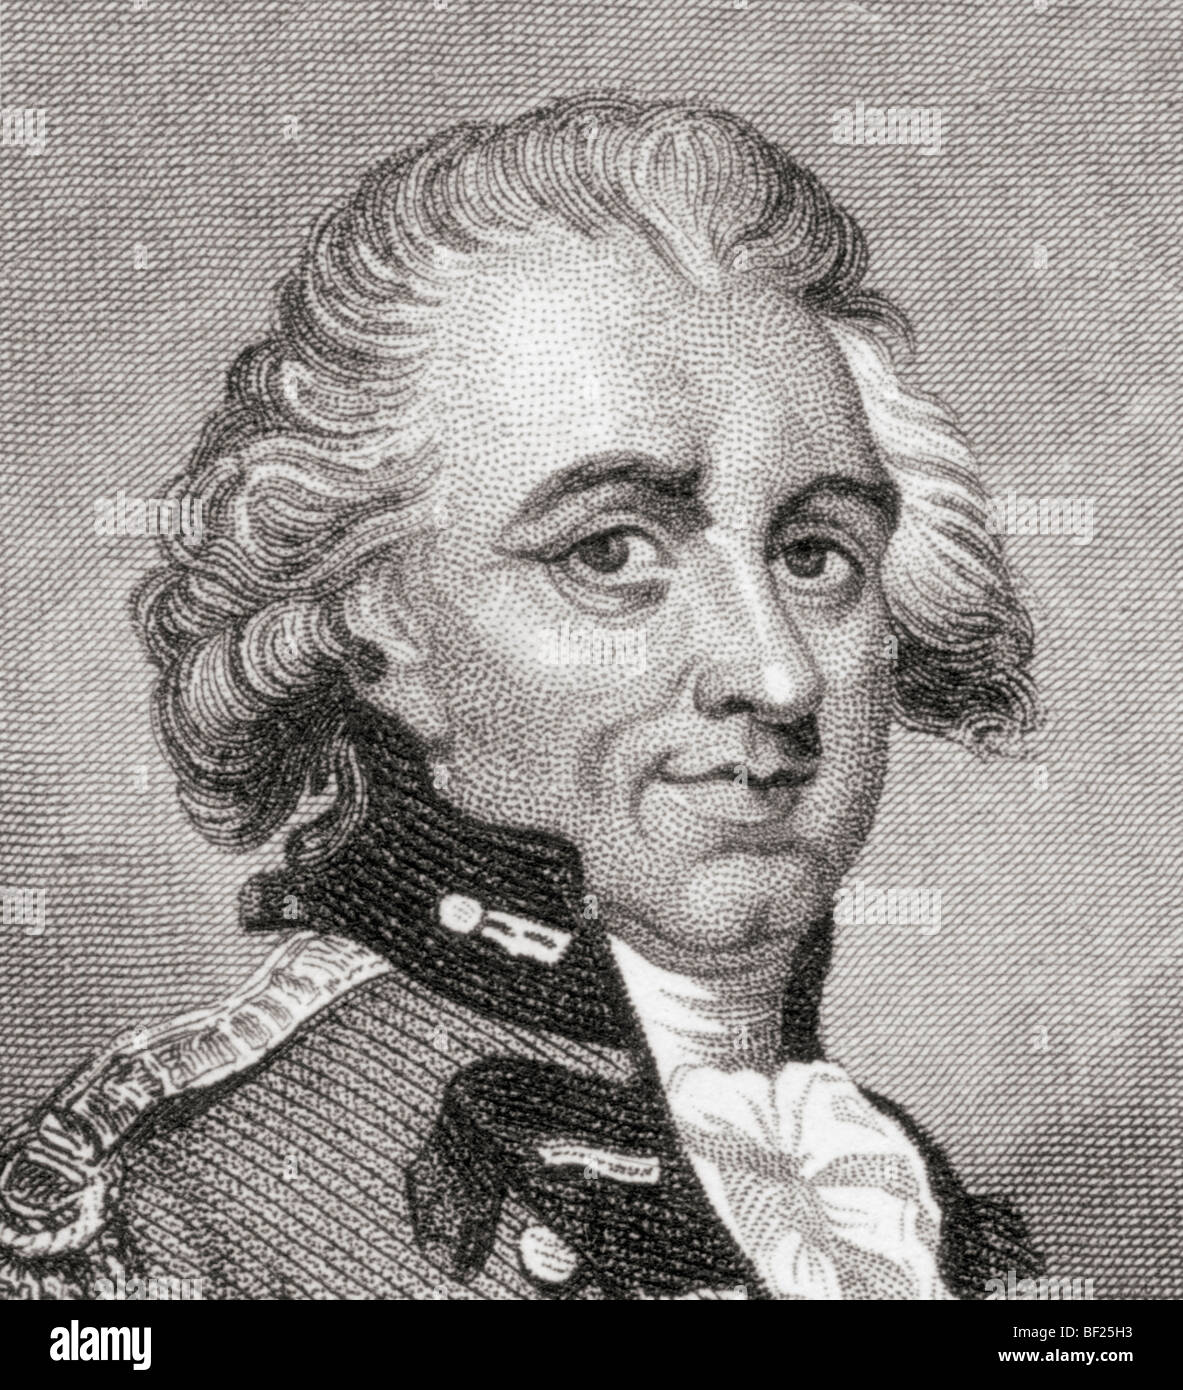 General Sir Henry Clinton, 1730 bis 1795. Offizier und Politiker der britischen Armee während des amerikanischen Unabhängigkeitskrieges. Nach einem Porträt aus dem 18. Jahrhundert. Stockfoto